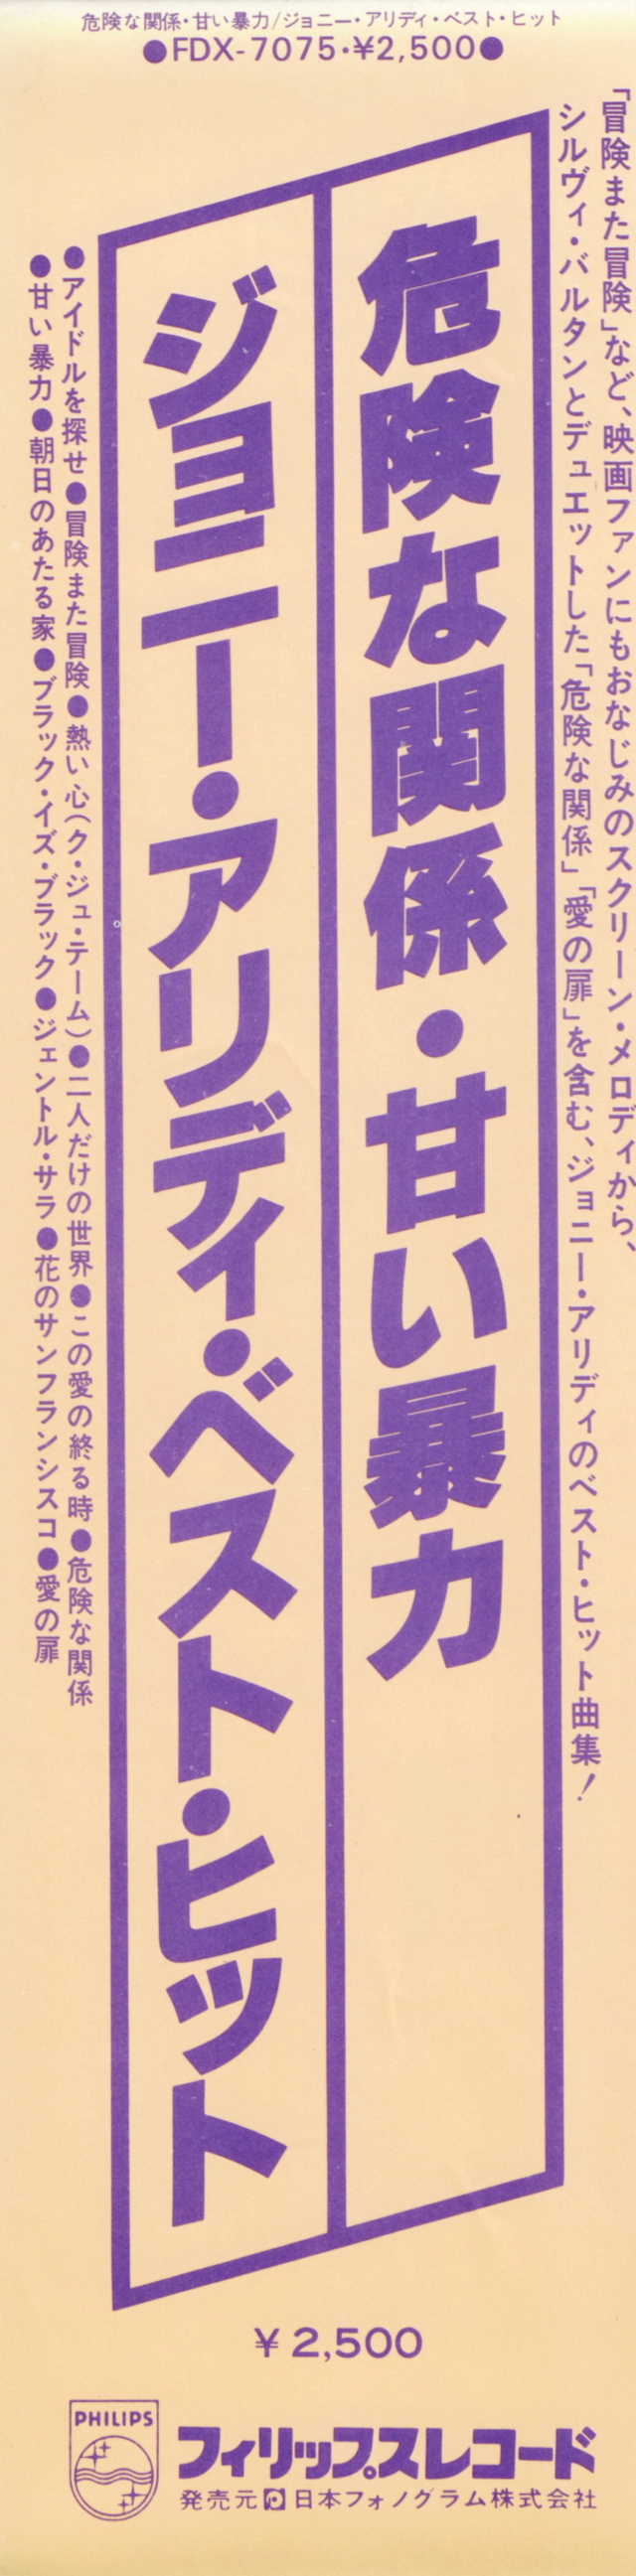 Discographie Japonaise - 4ème partie (33 T COMPILATION) - Page 16 Jpn_fd31